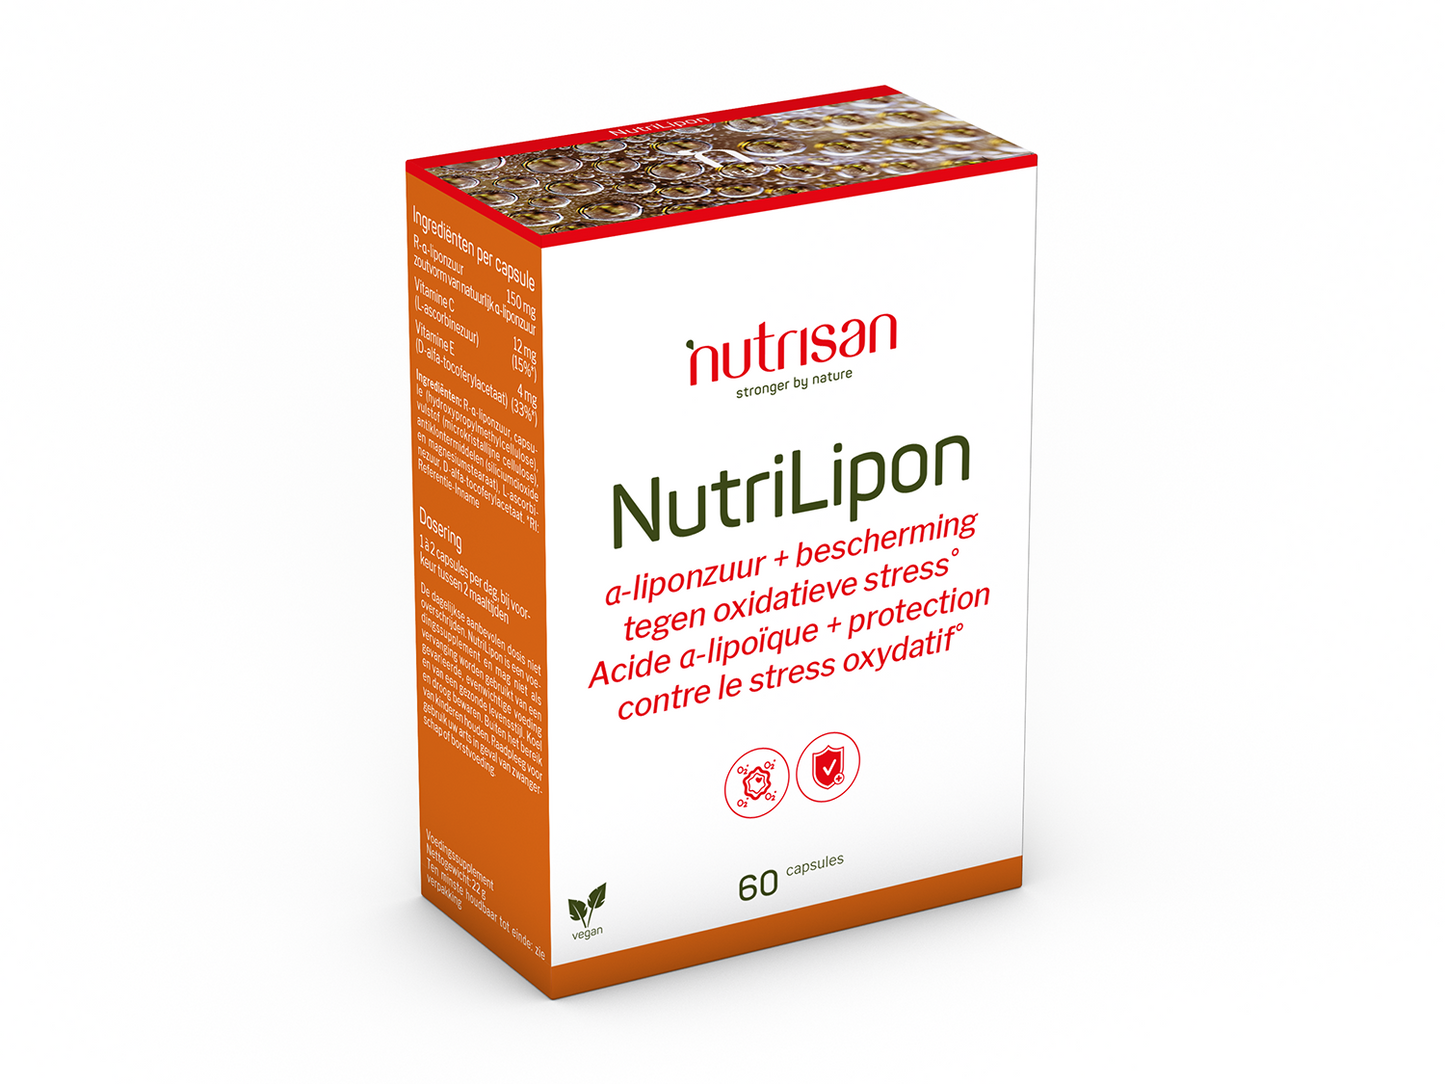 Nutrisan NutriLipon - 60 capsules - Supplement bij oxidatieve stress